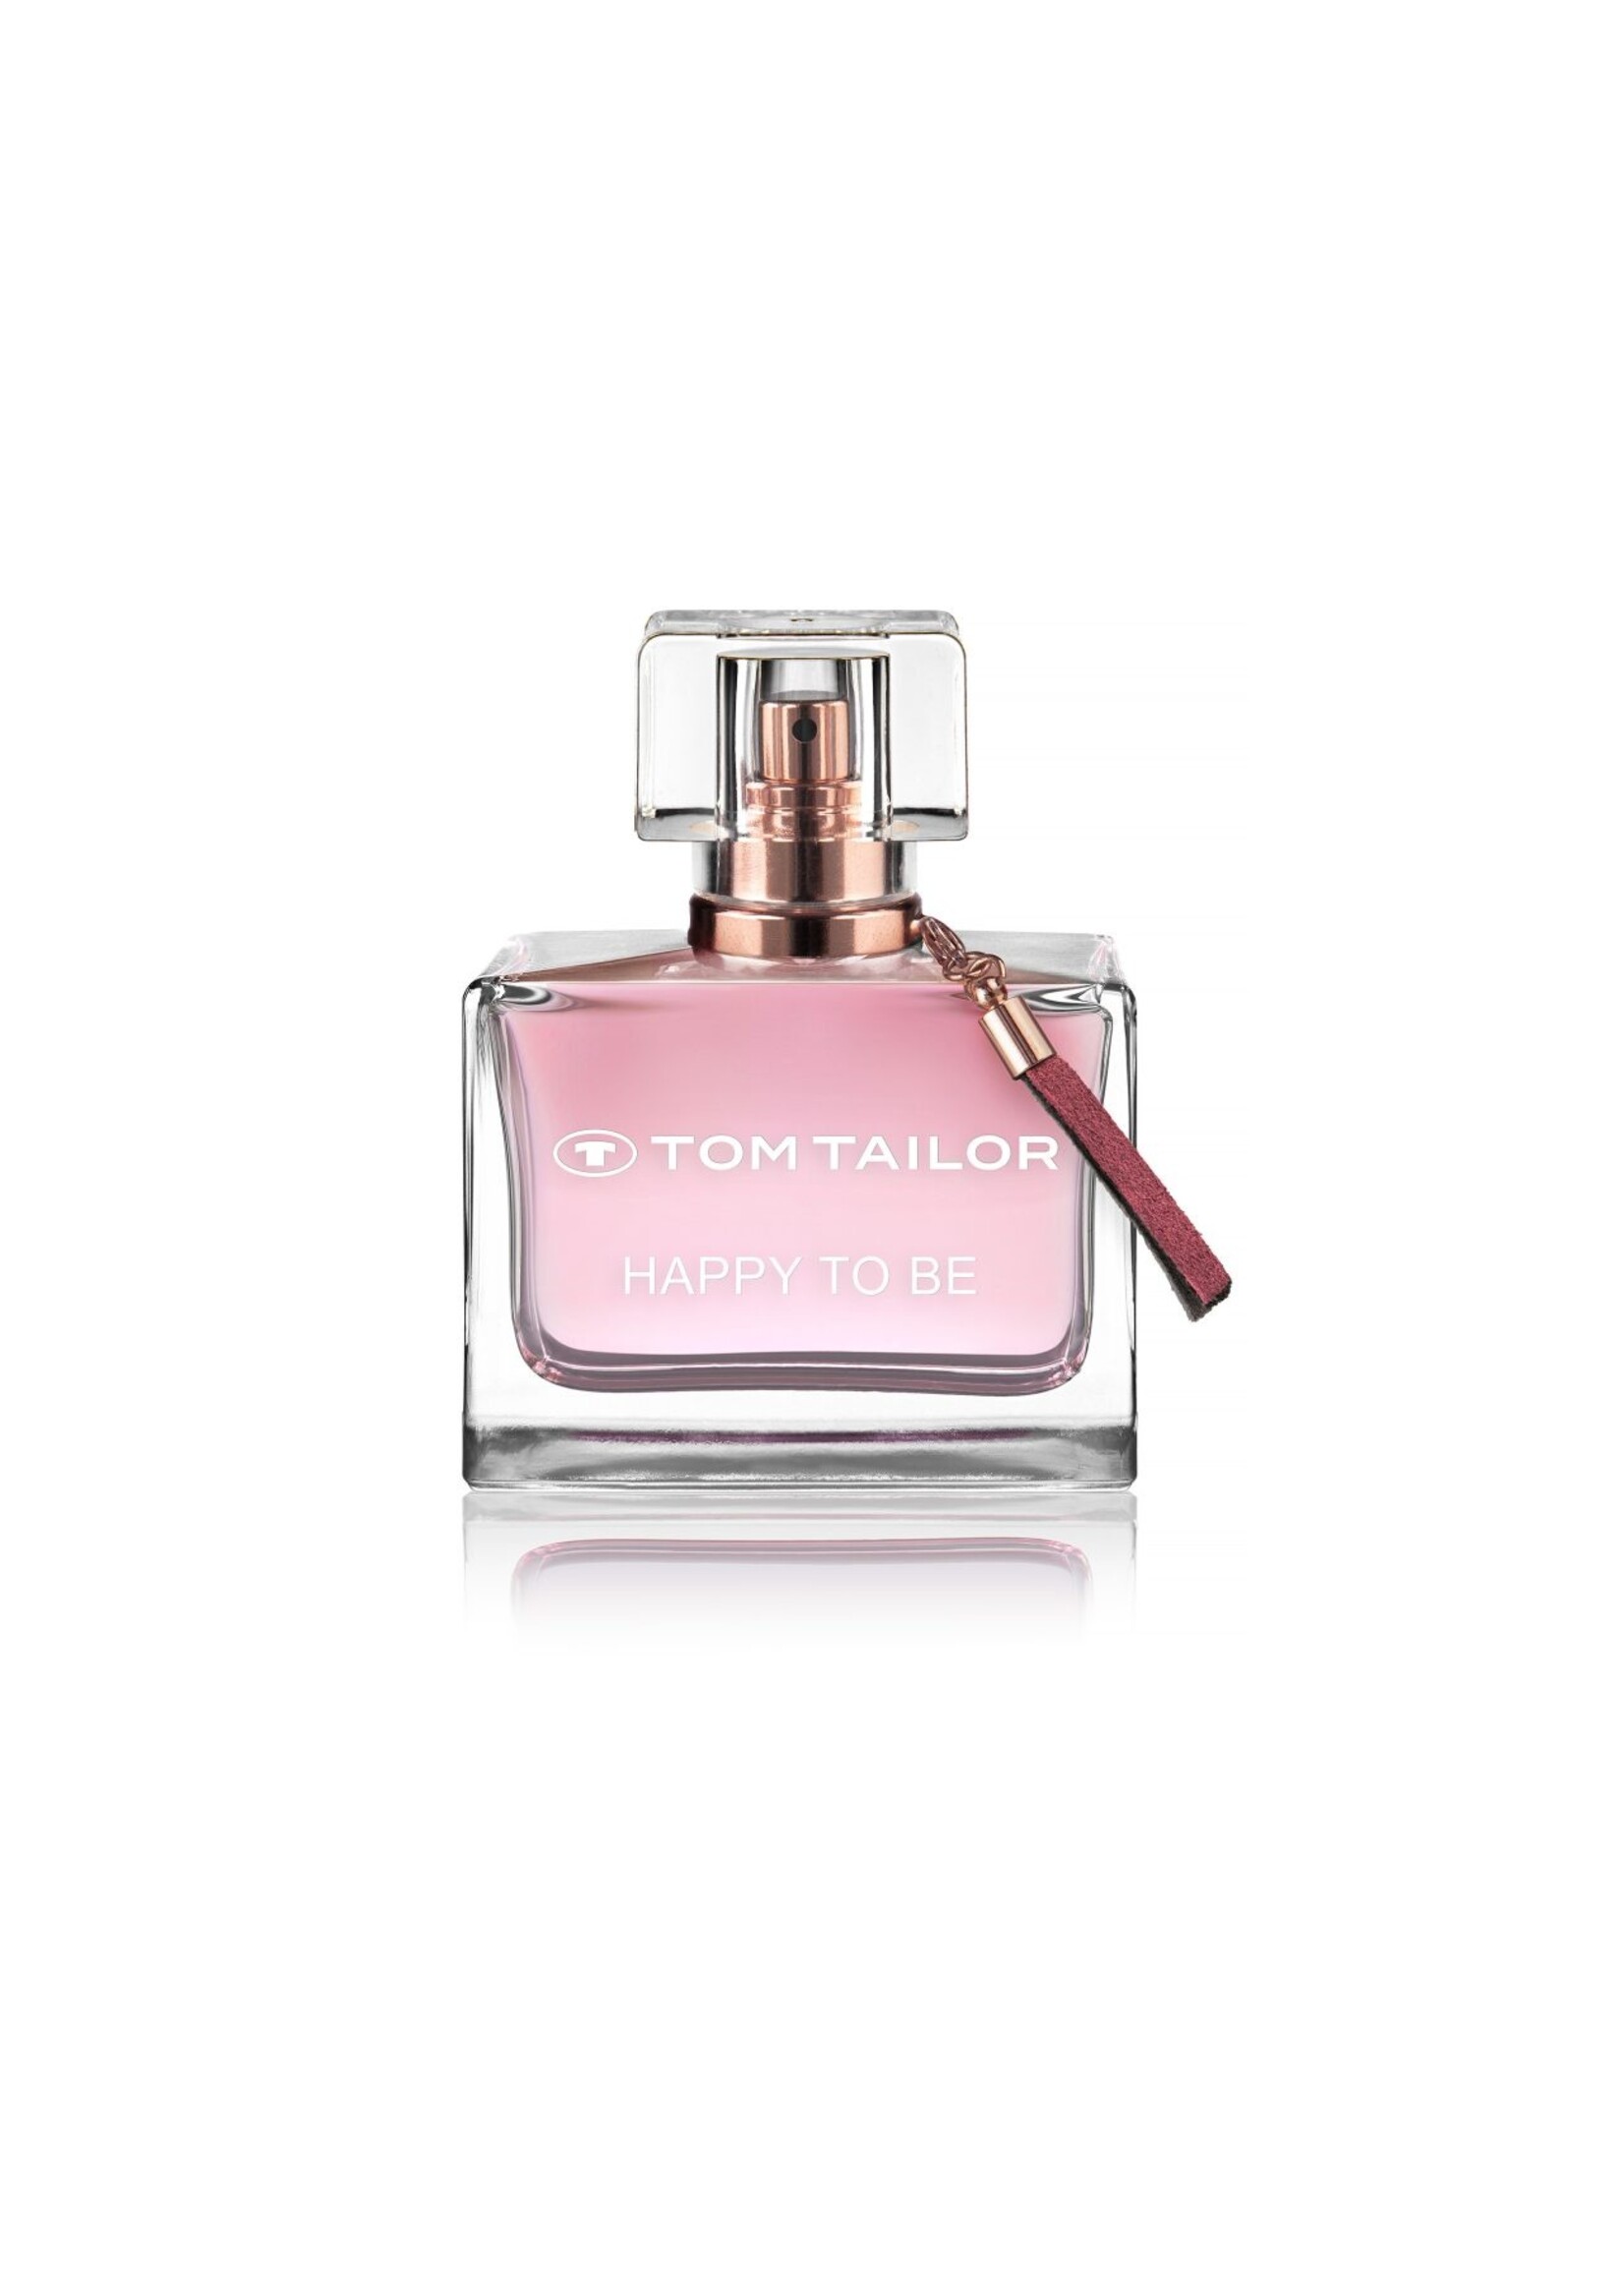 Happy To Be - ROSE Parfumerie De Eau Toilette- TAILOR parfums-PARFUMERIE TOM MARIE Marie-Rose